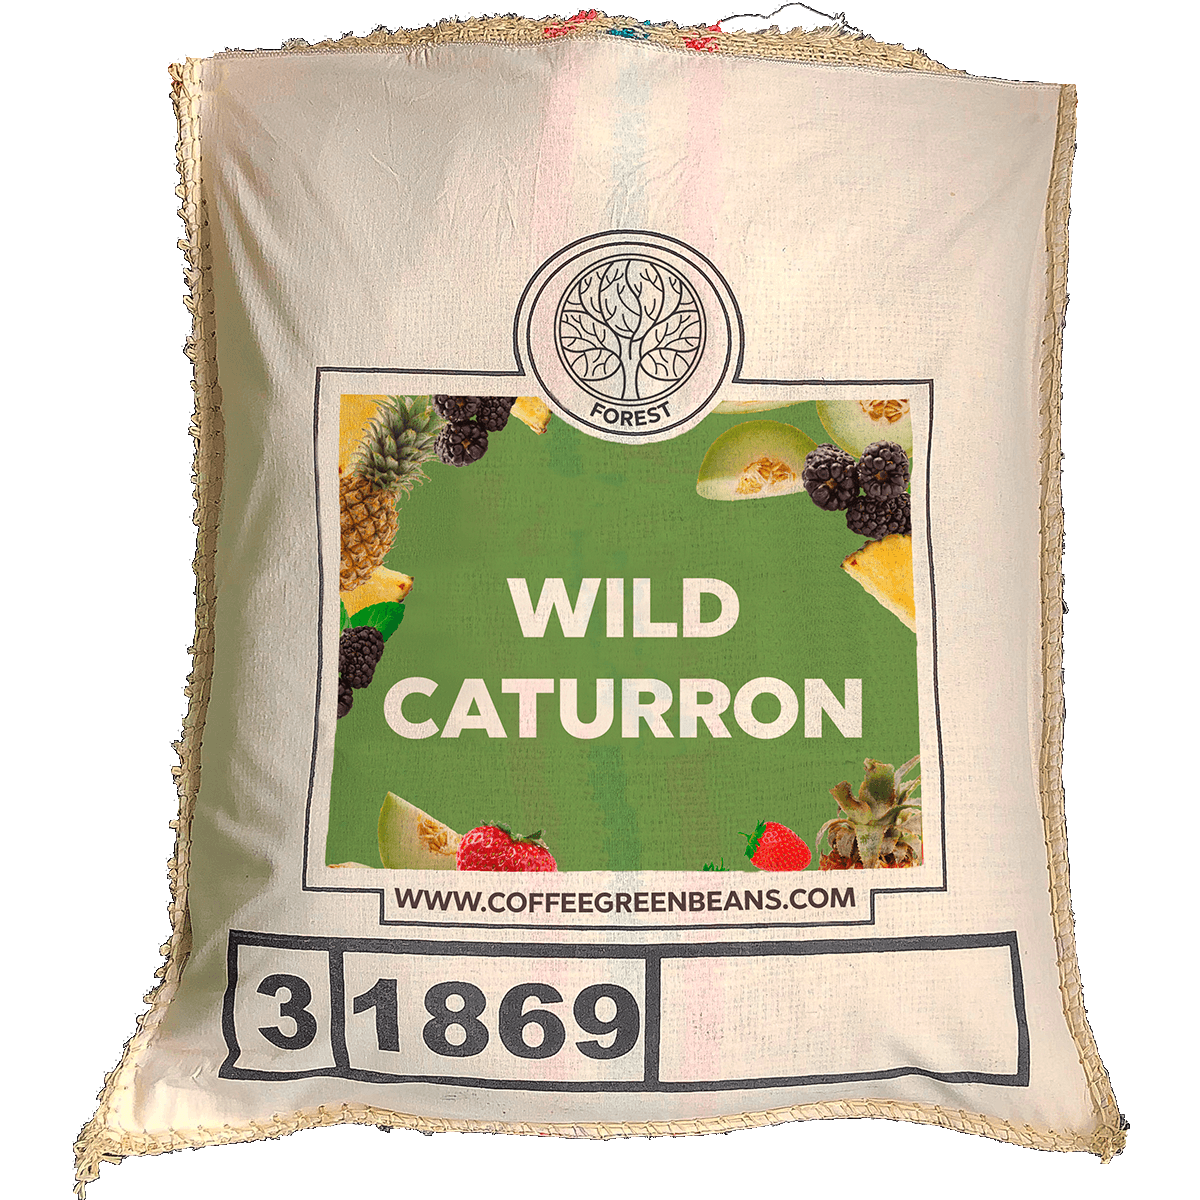 WILD CATURRON - Forest Coffee 